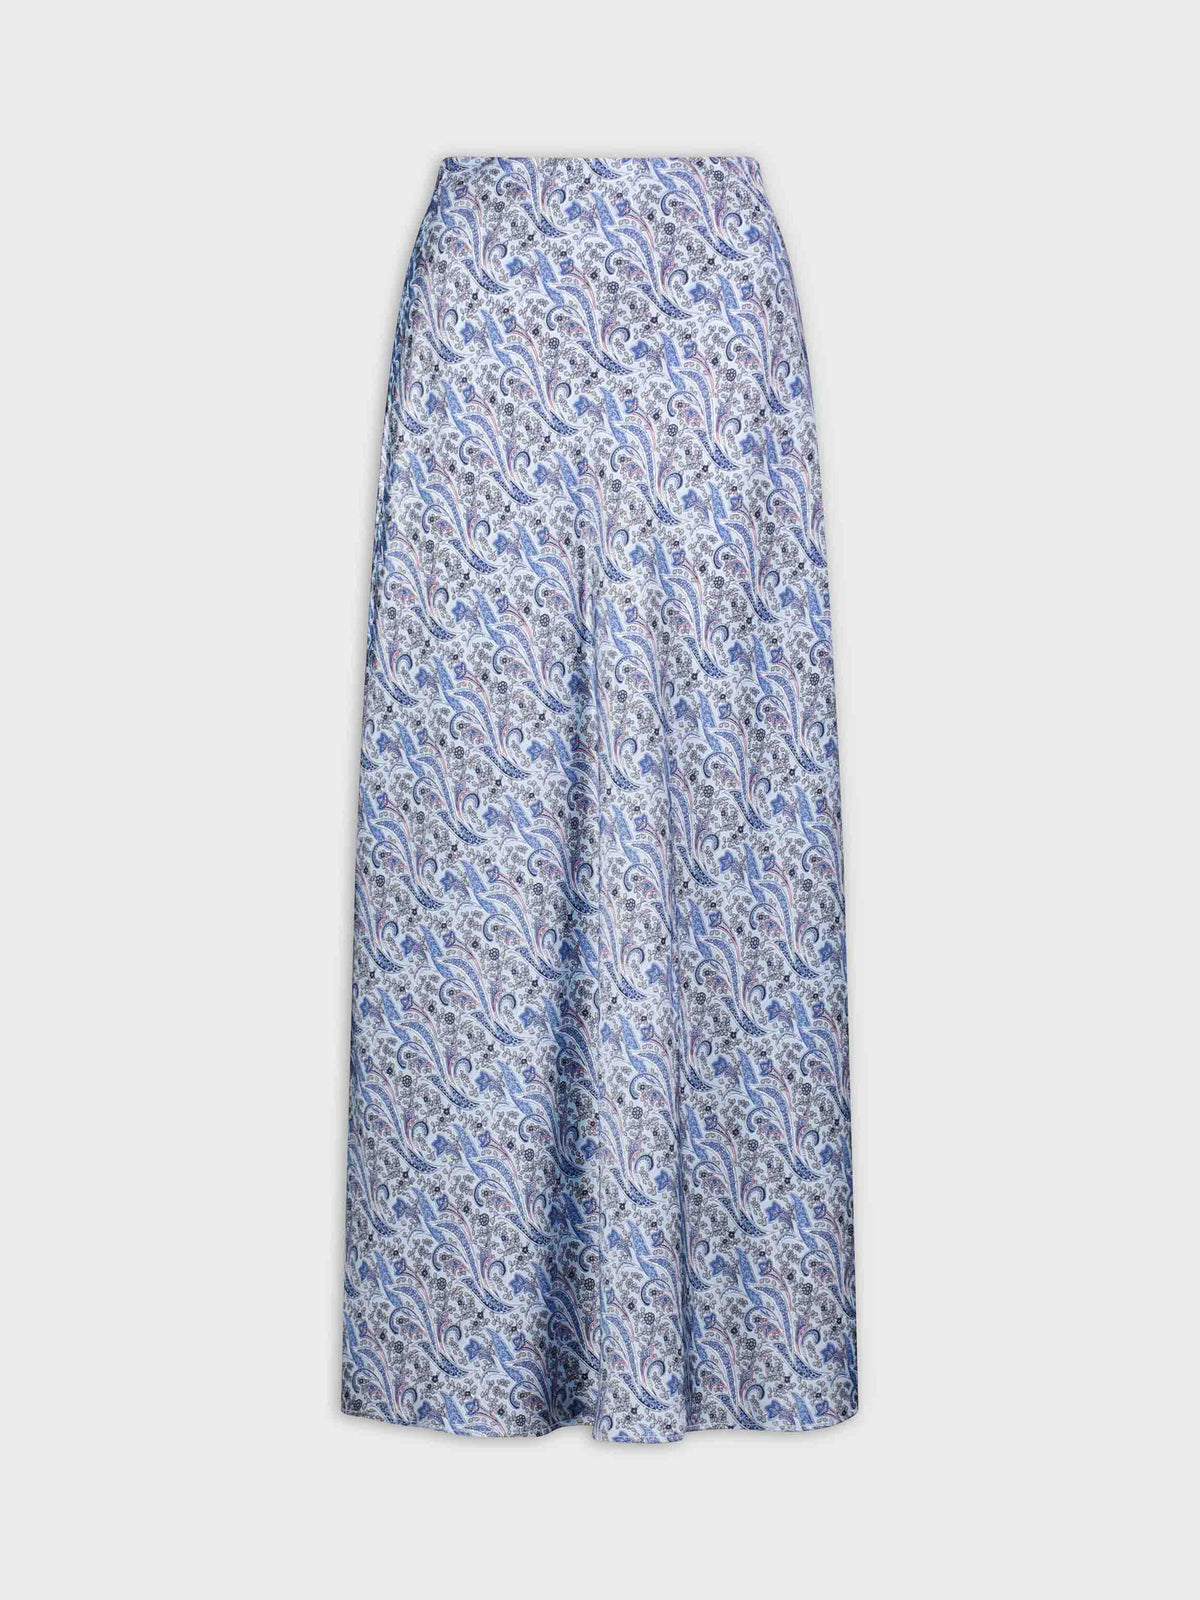 Printed Satin Slip Skirt-Light Blue Paisley